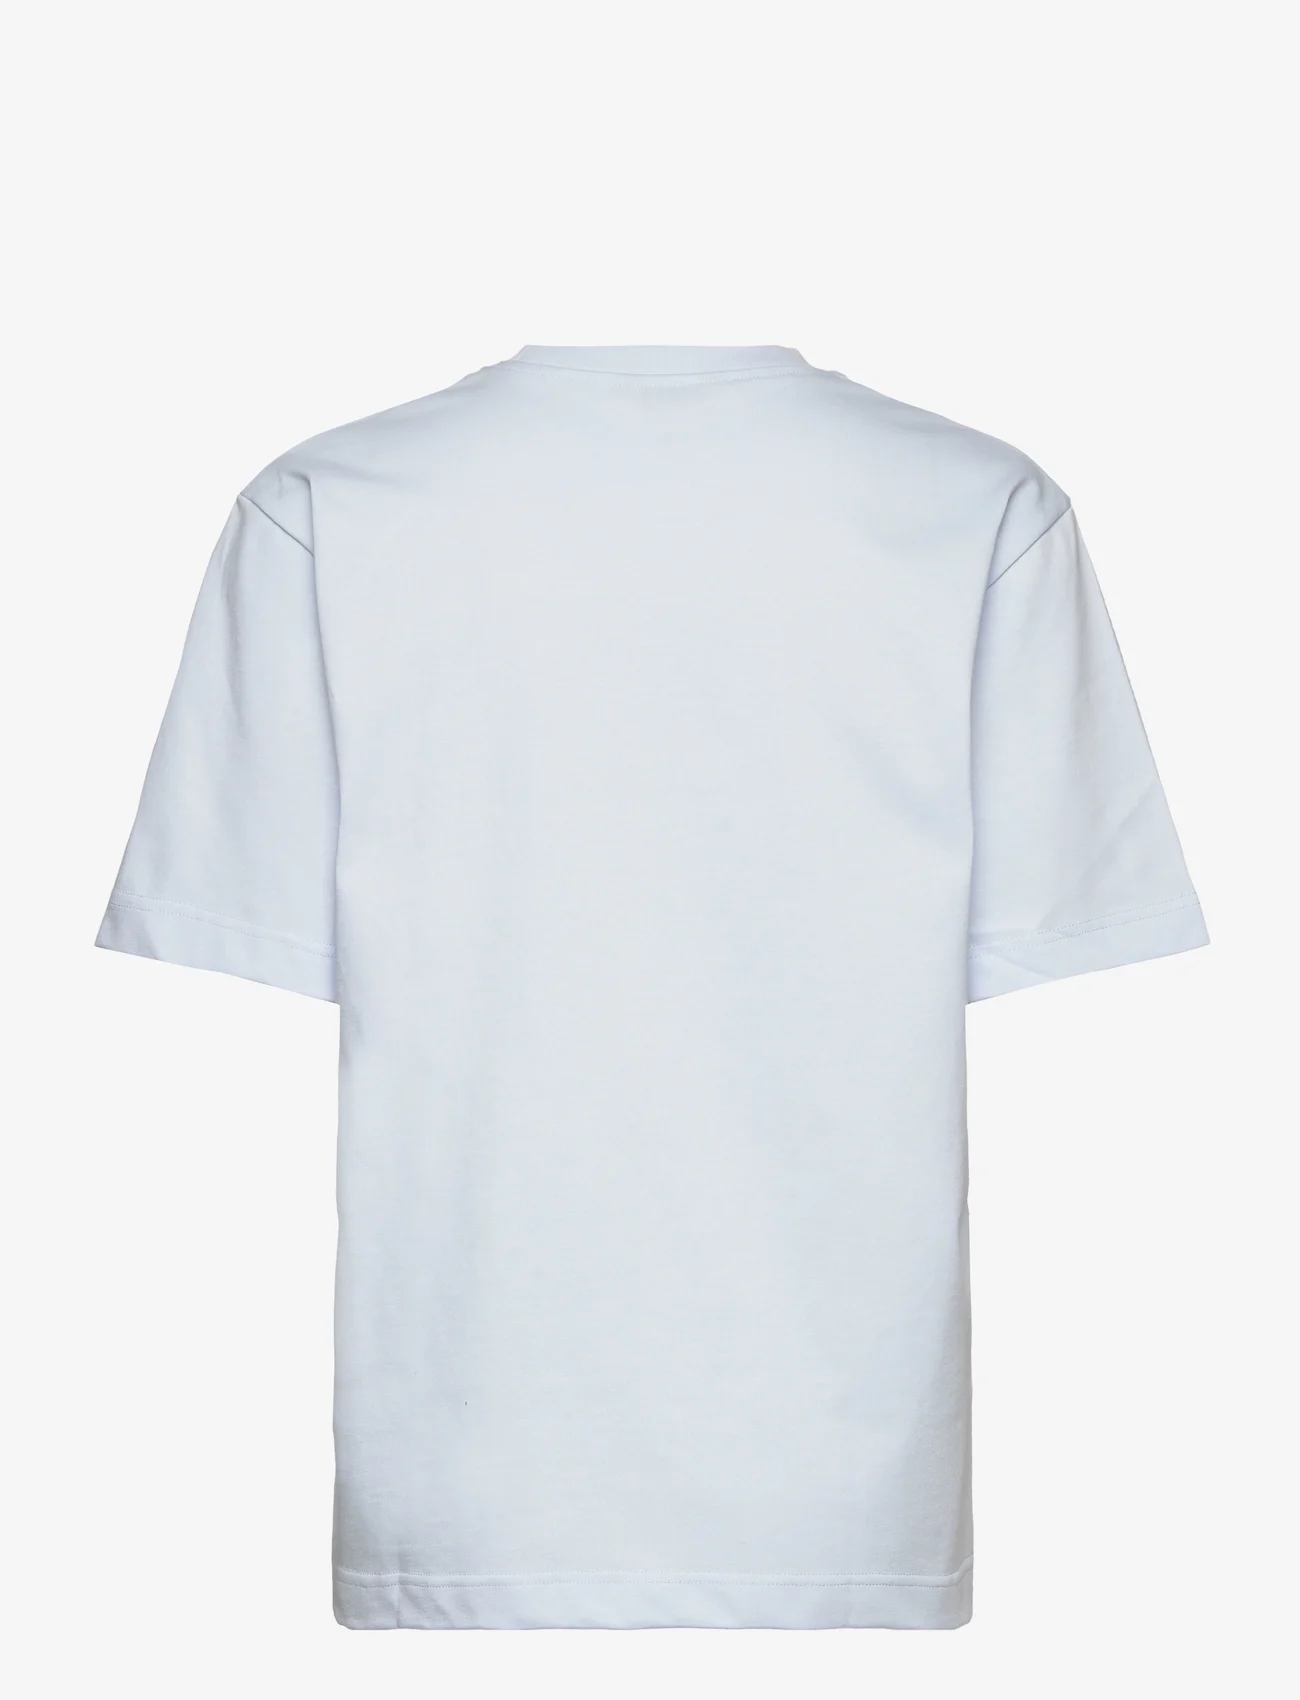 HOLZWEILER - W. Hanger Tee - t-shirts & tops - lt. blue - 1